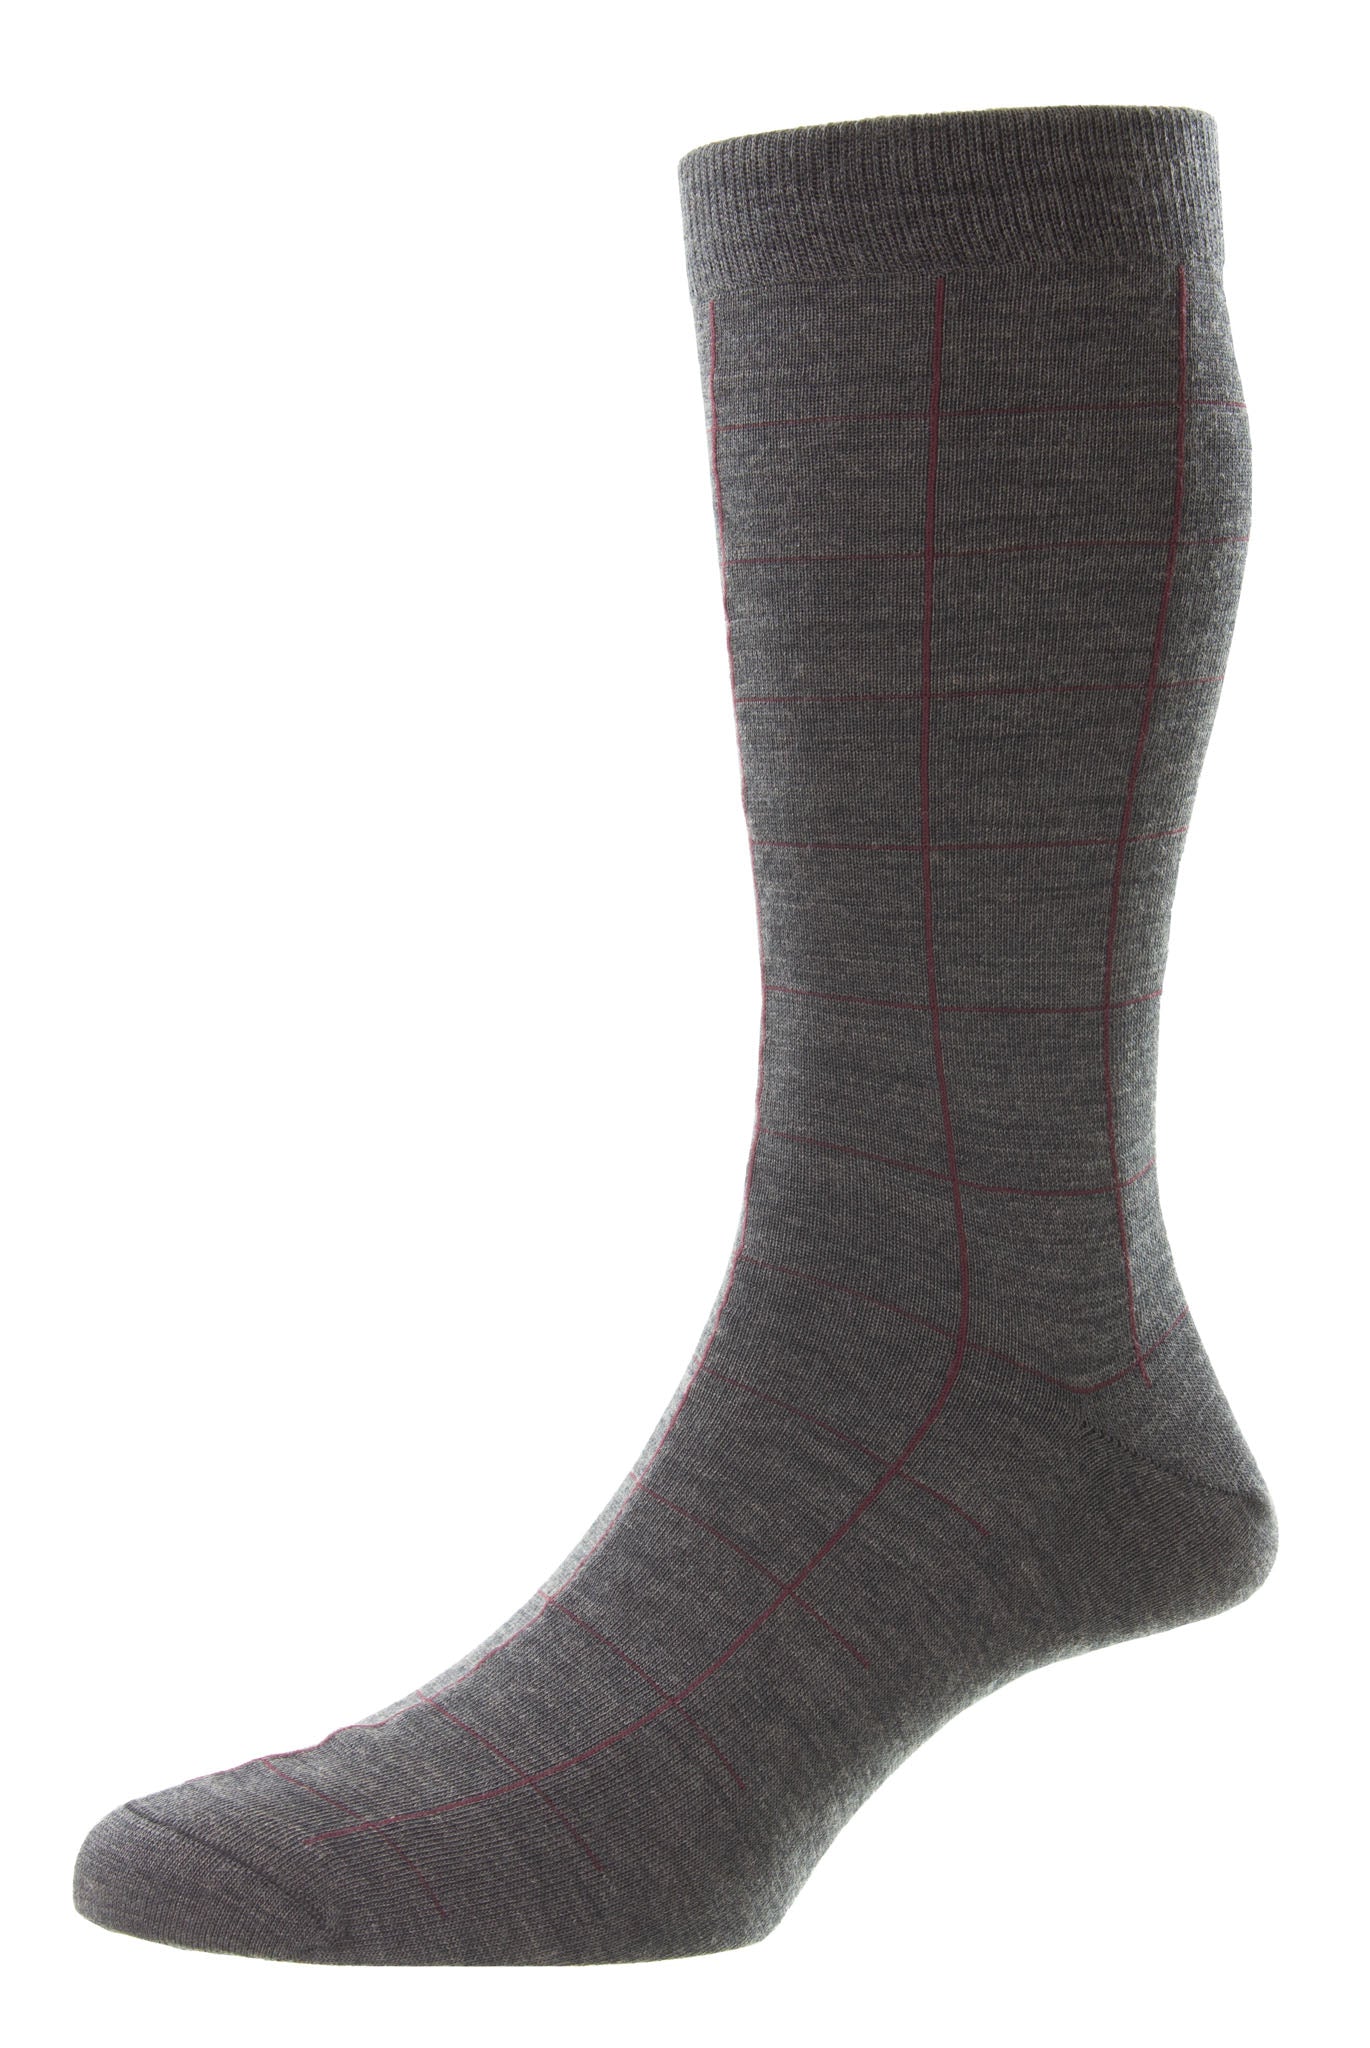 Westleigh Windowpane Merino Wool Men's Socks